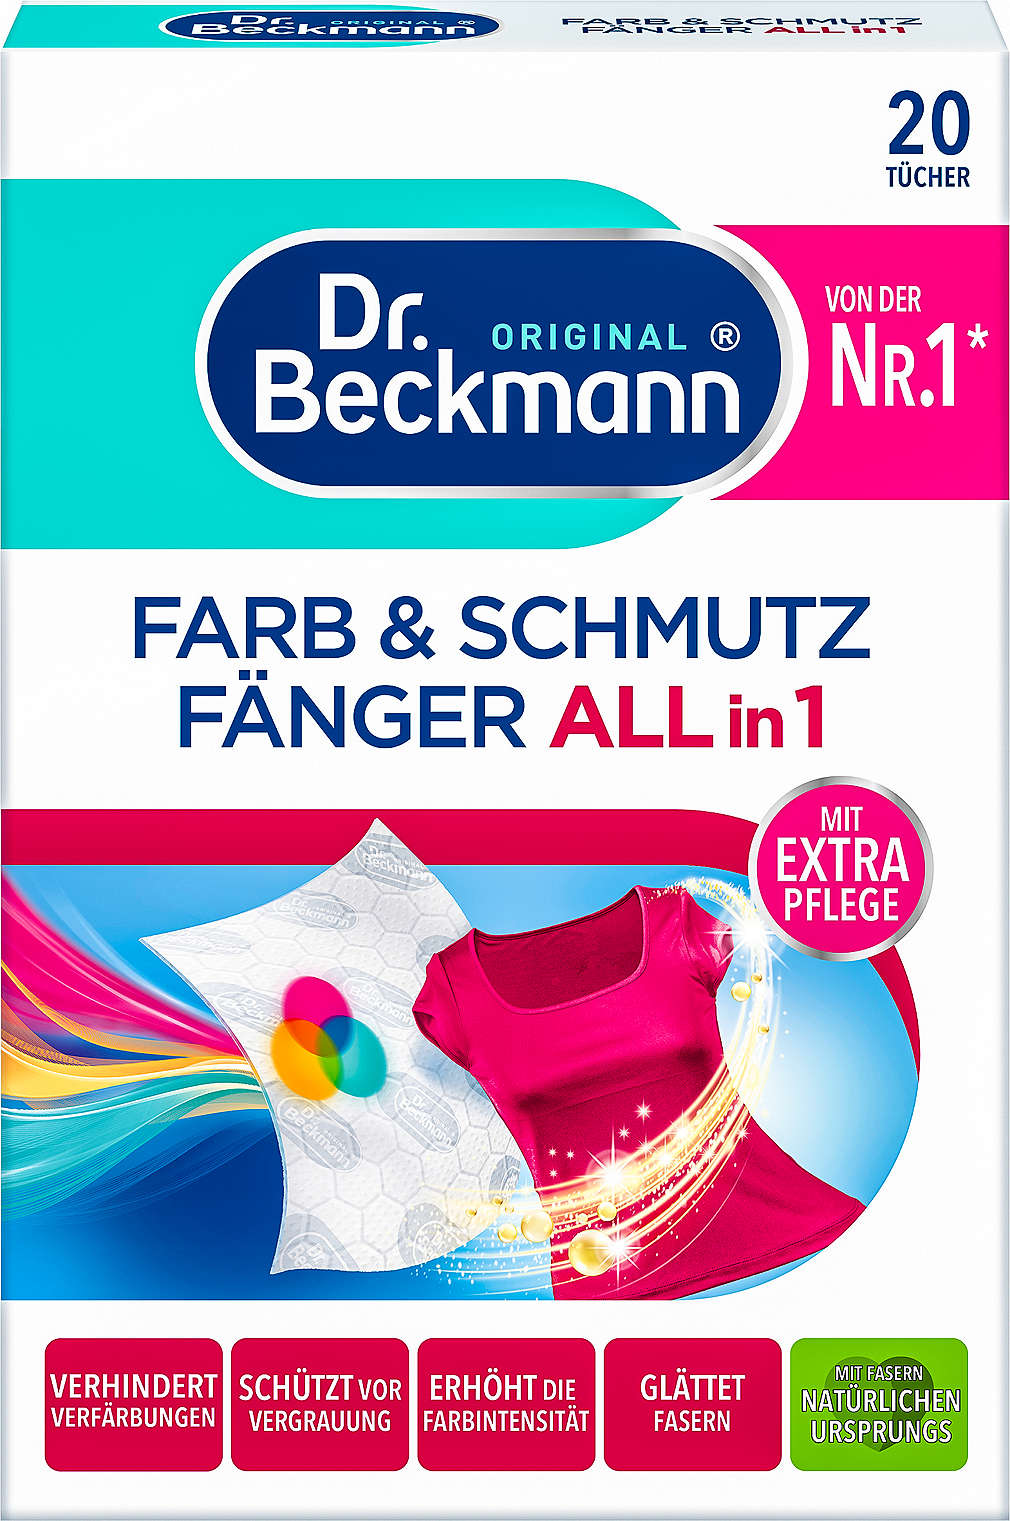 Abbildung des Angebots DR. BECKMANN Farb- & Schmutzfänger 3 in 1 